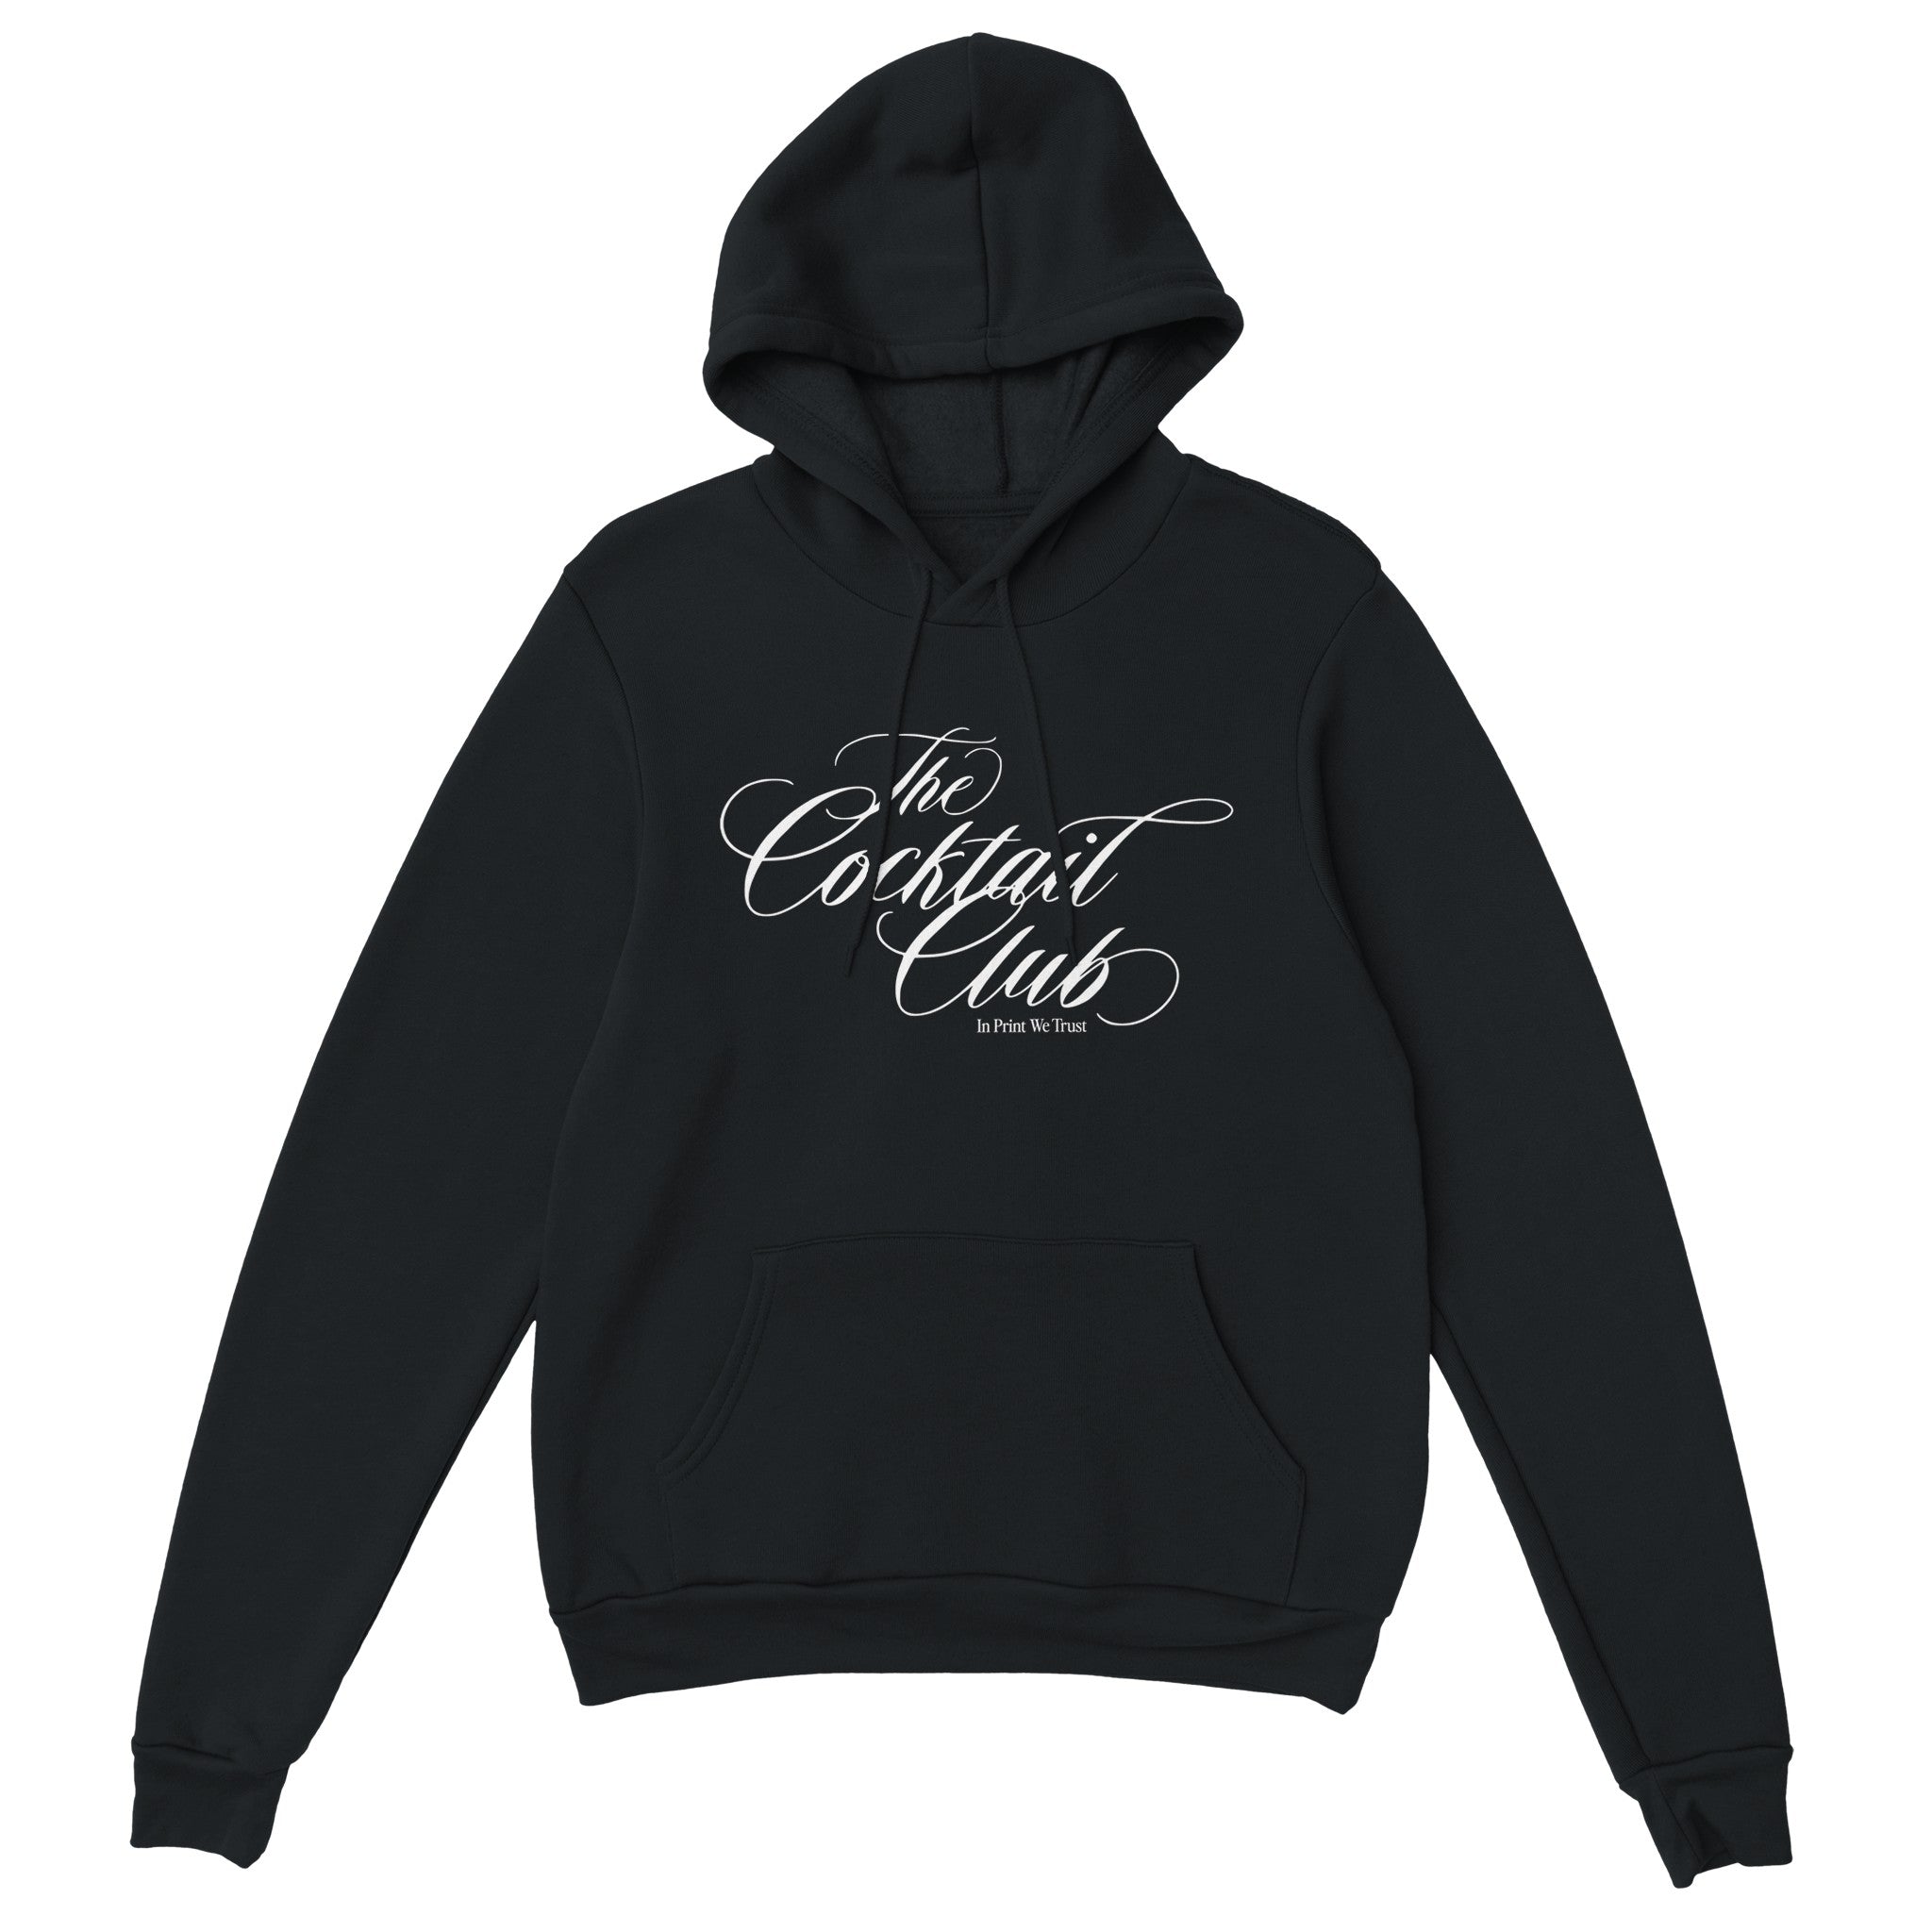 'The Cocktail Club' hoodie - In Print We Trust